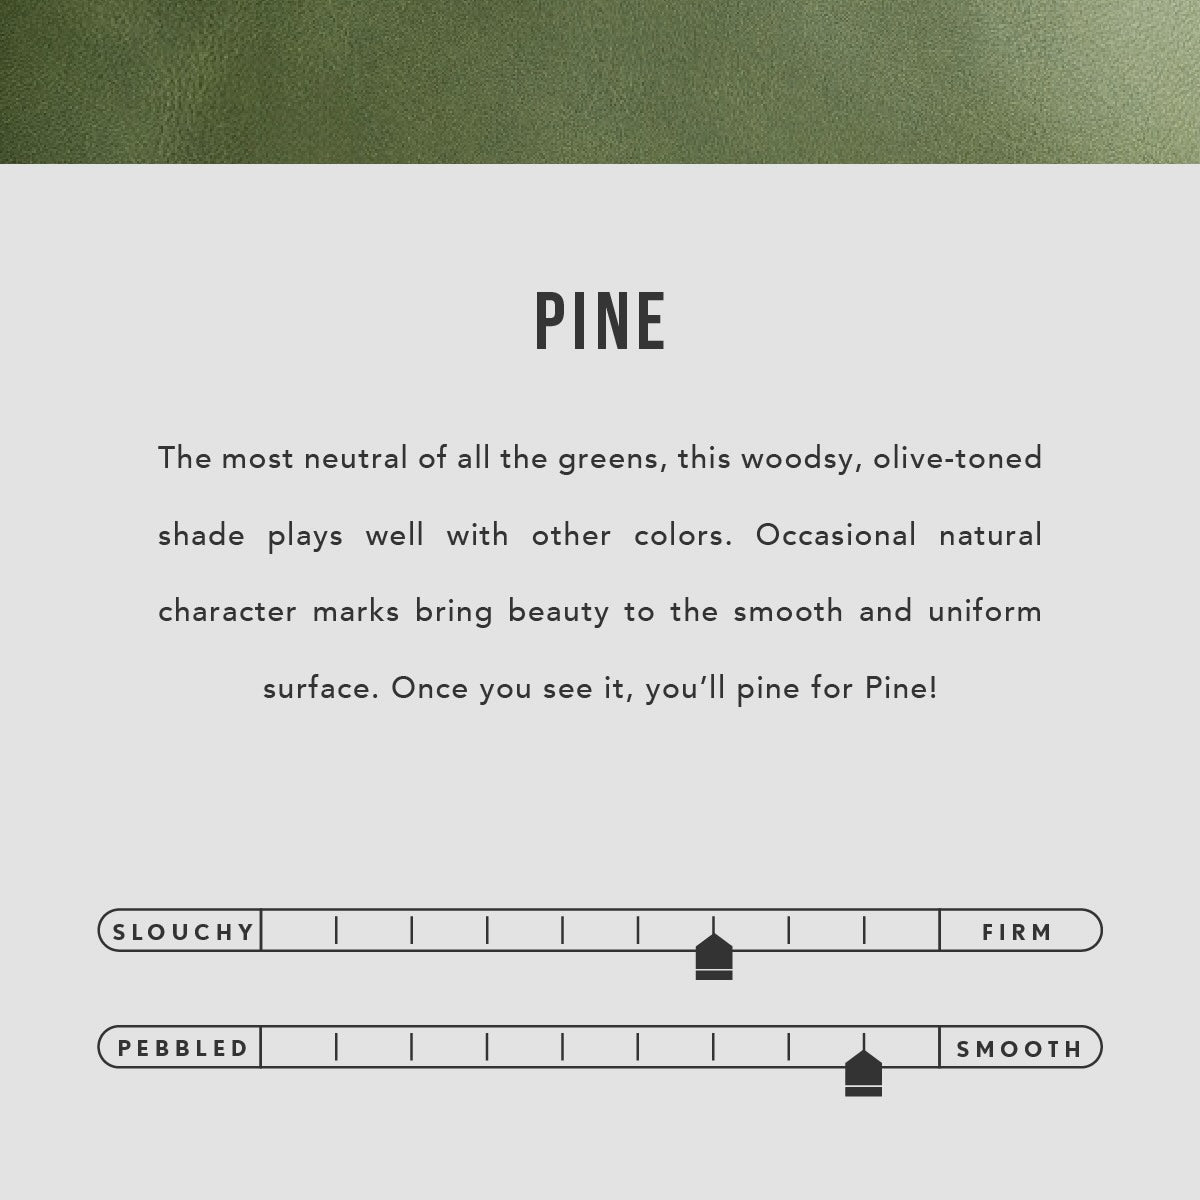 Pine | infographic